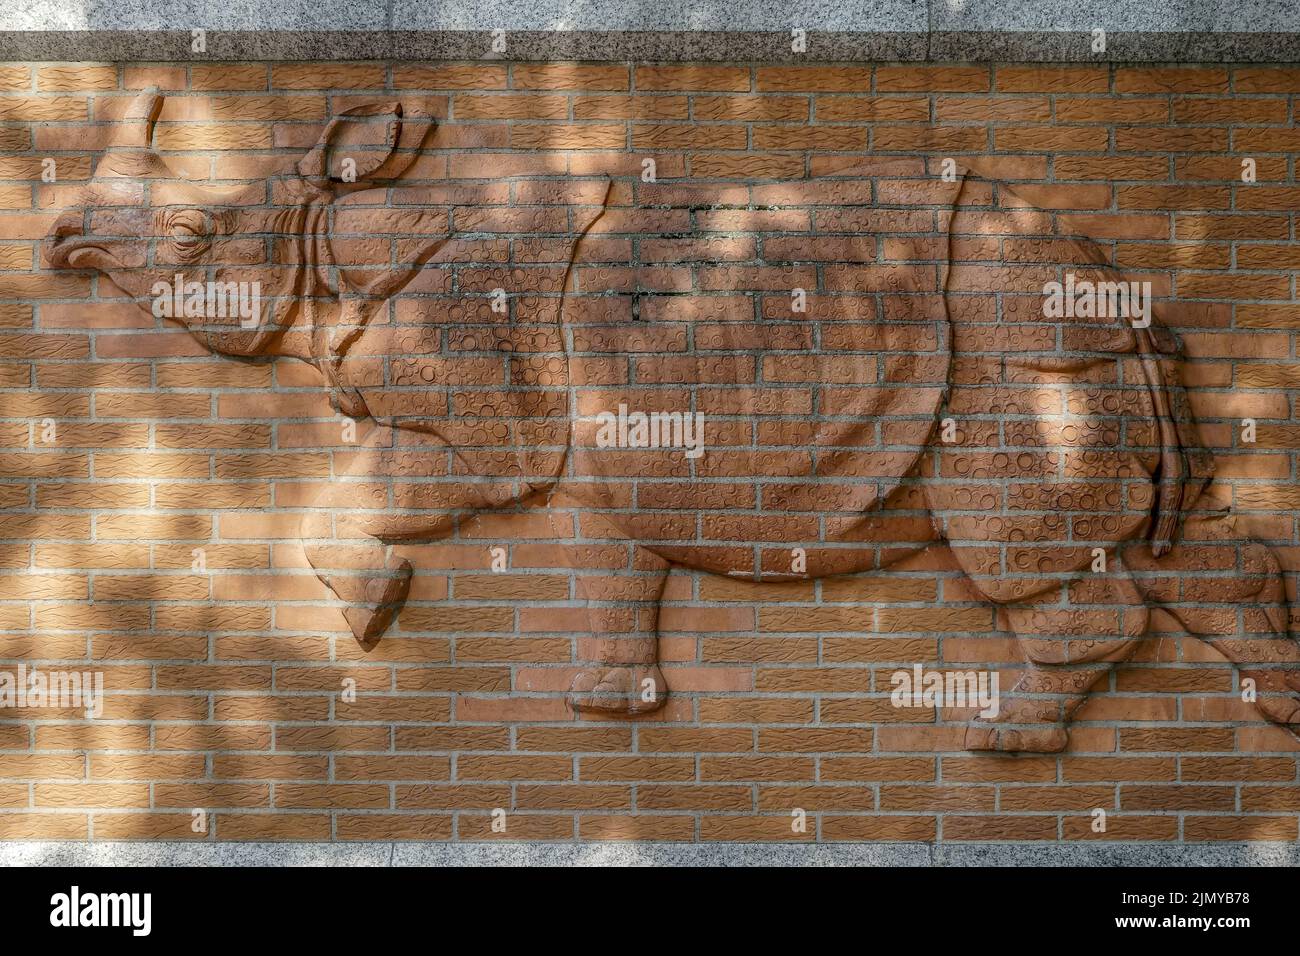 Berlín, Alemania, 2014. Relieve rinoceronte en la pared fuera del zoológico de Berlín Foto de stock